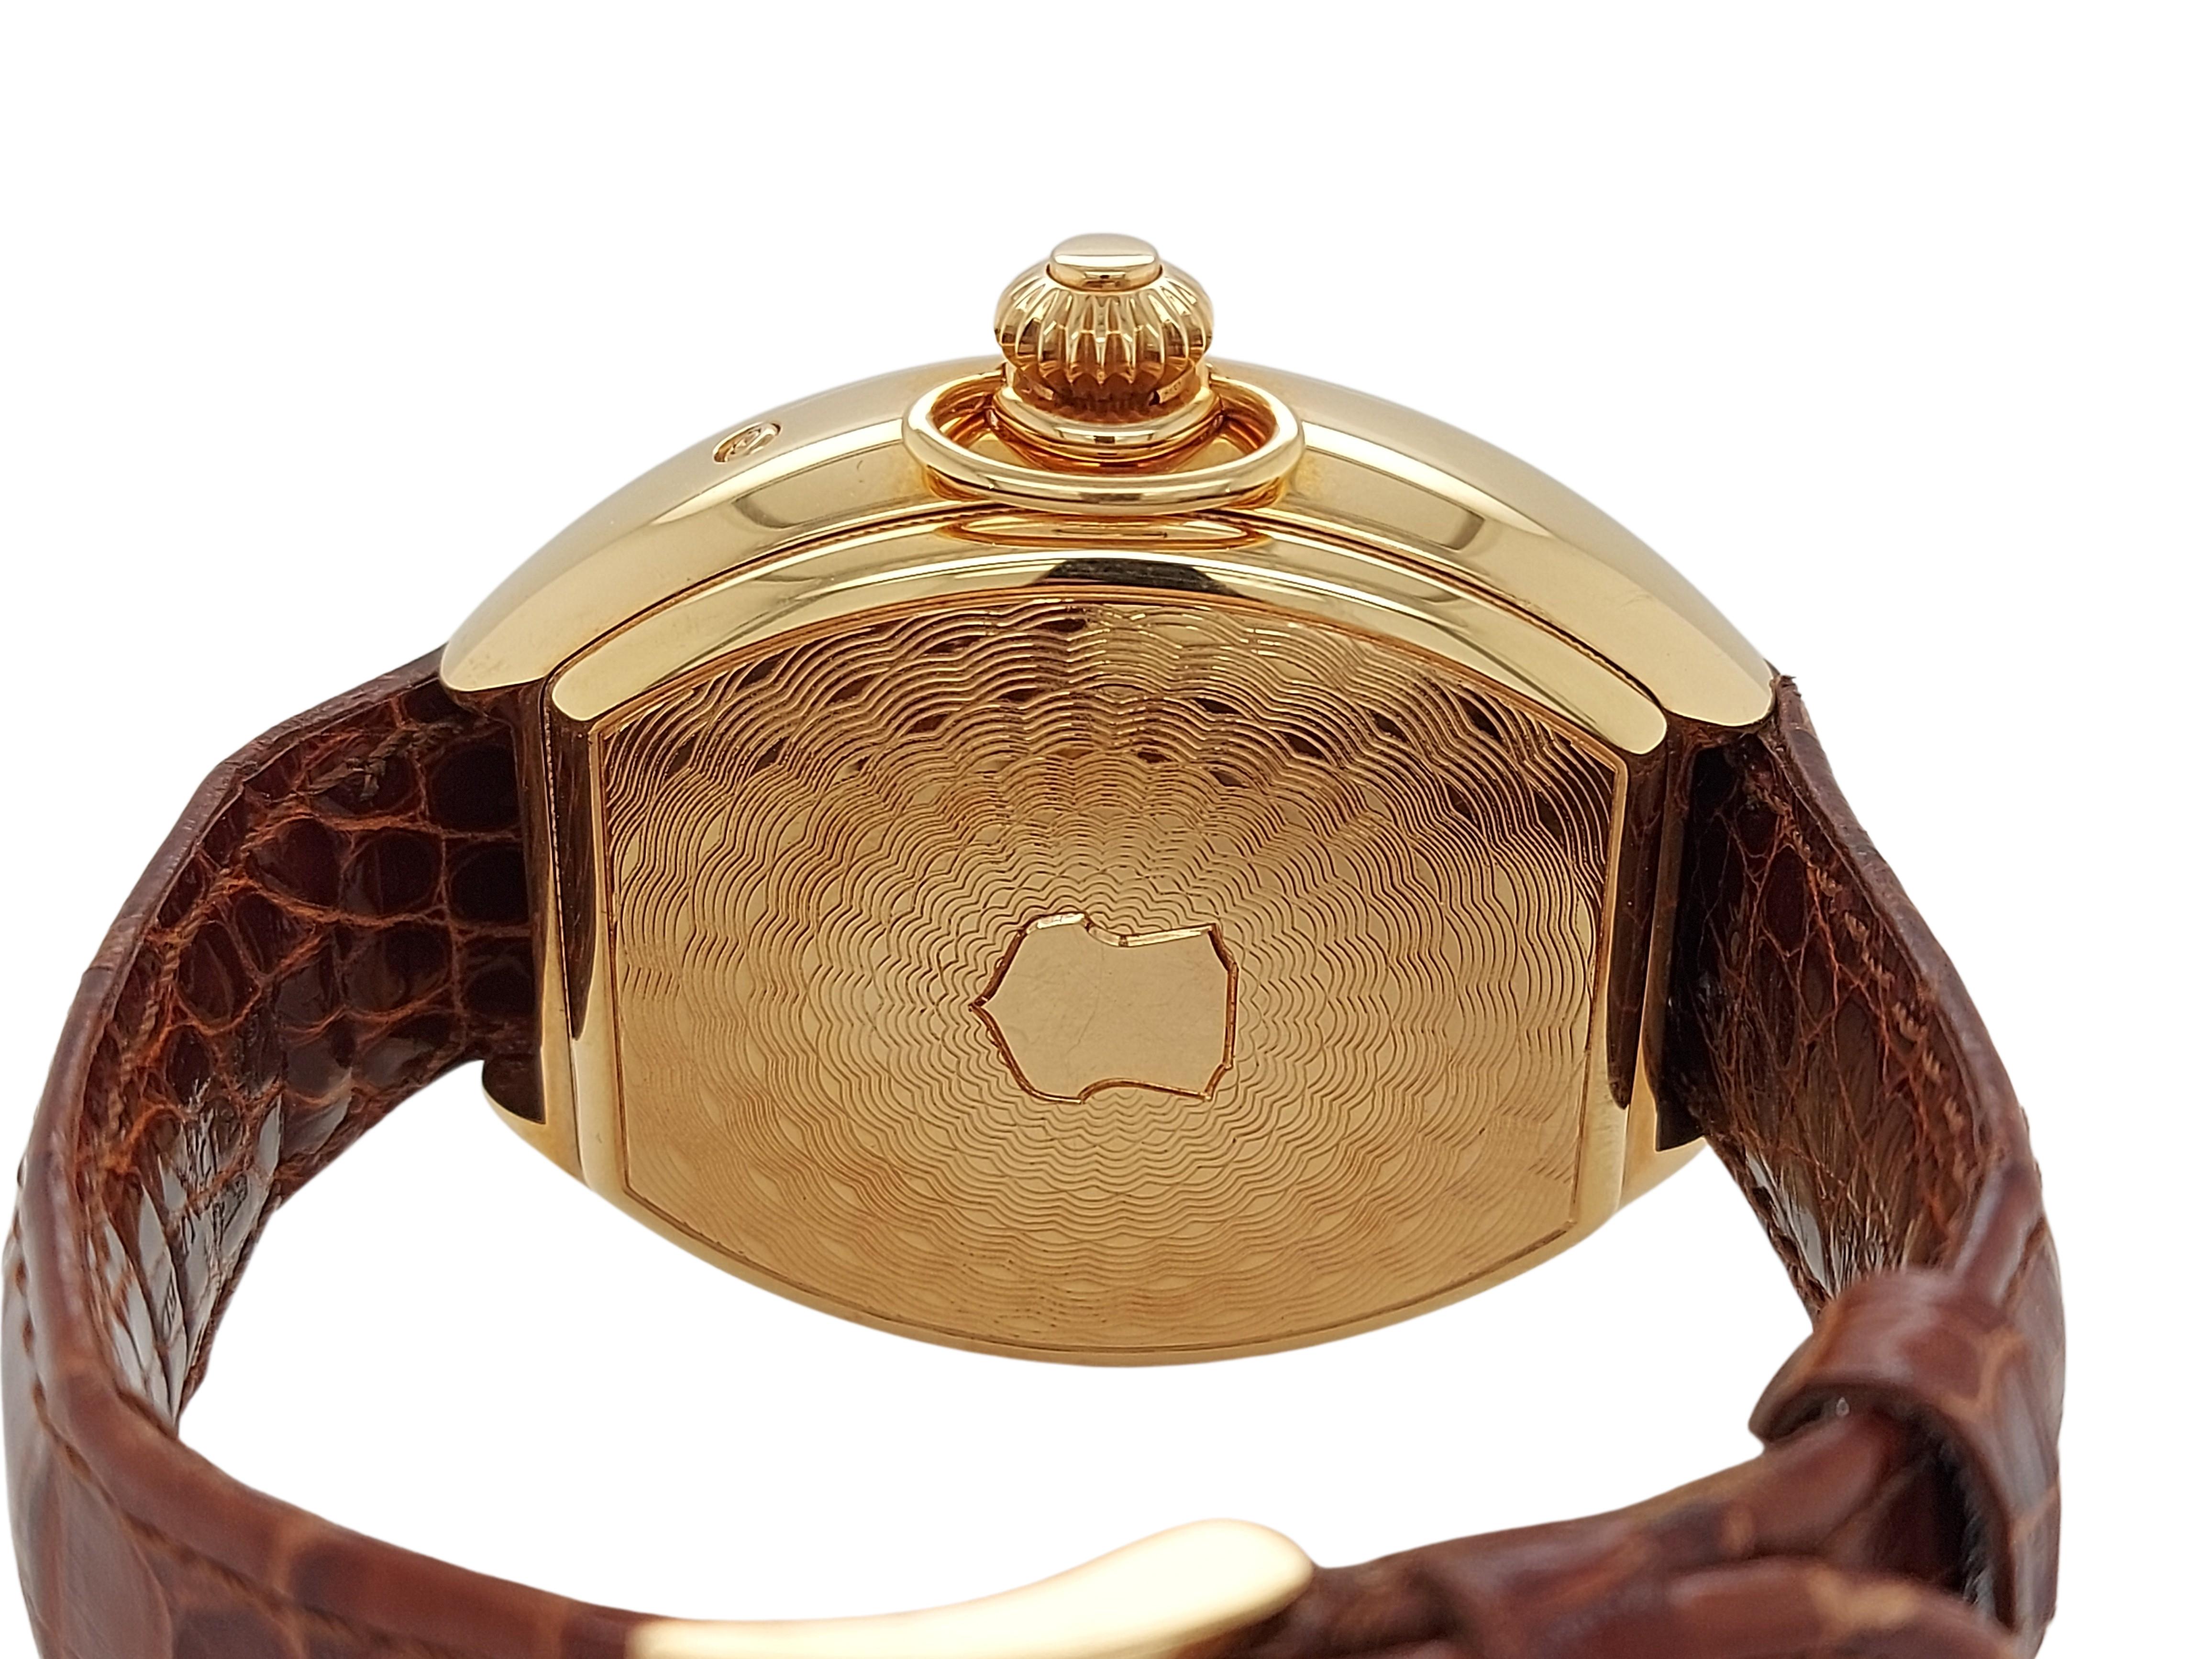 Pink Gold Van Der Bauwede Quantième annuel 4saisons Wrist Watch- Limited Edition For Sale 1